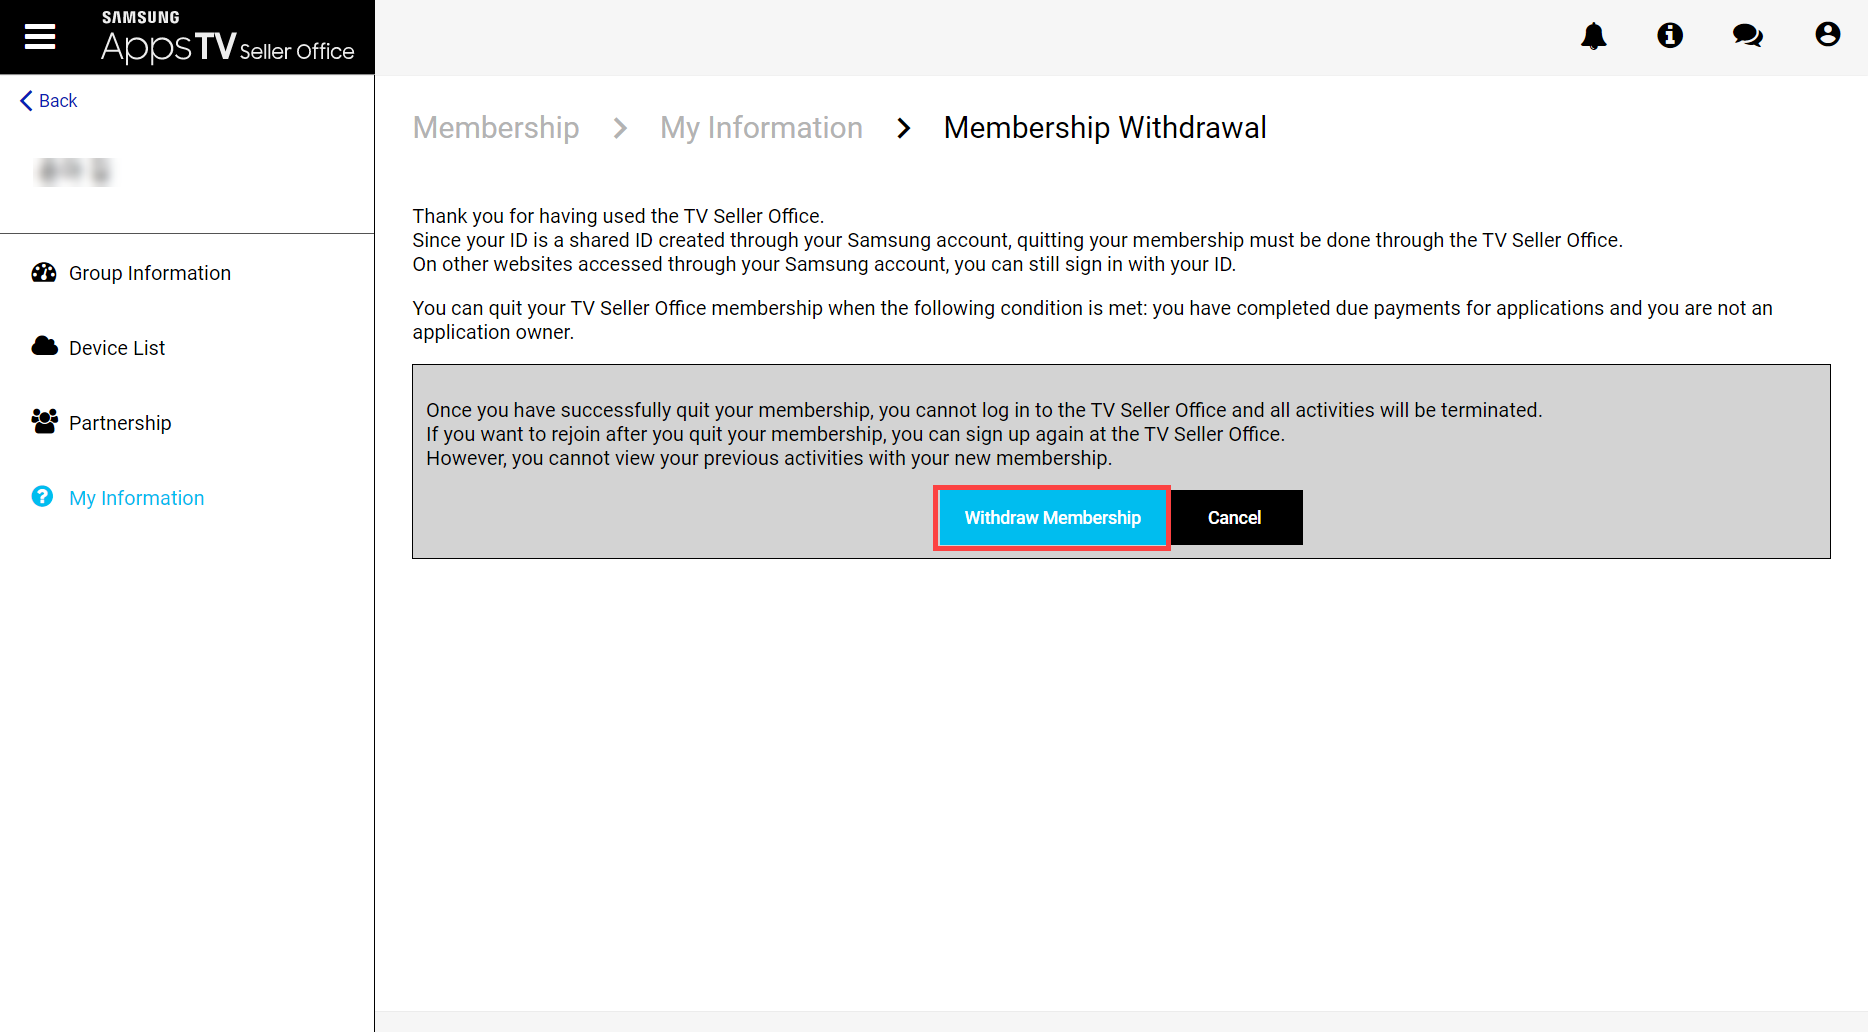 Figure 2. Membership Withdrawal page